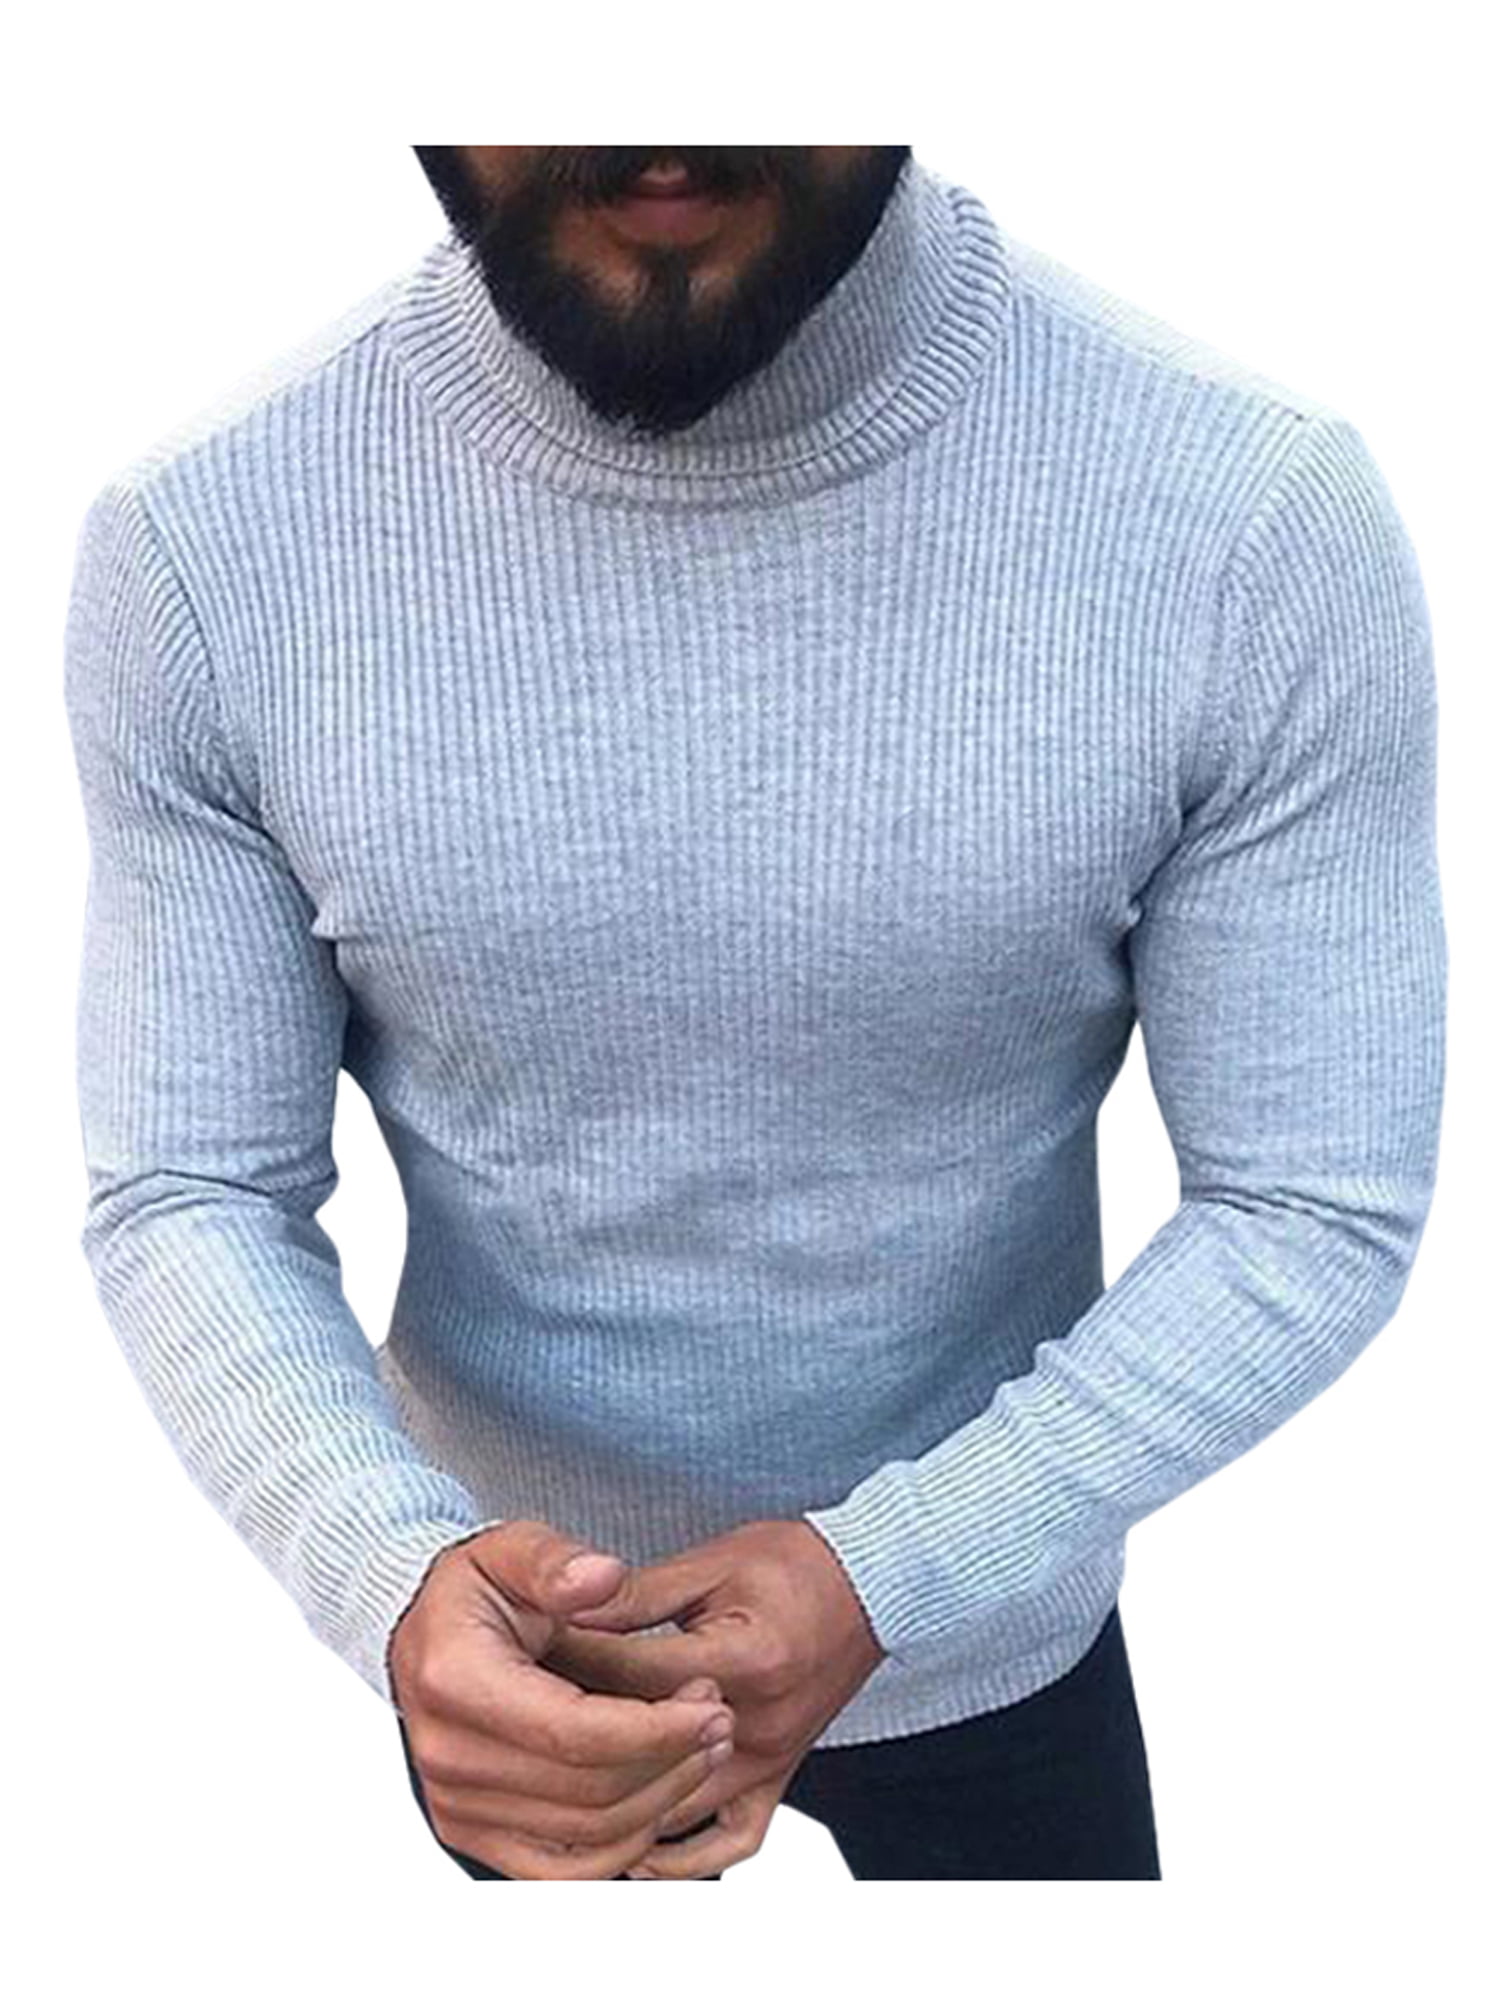 Winter Men's Turtleneck Sweater Long Sleeve Pullover Jumper Knitwear Slim Fit